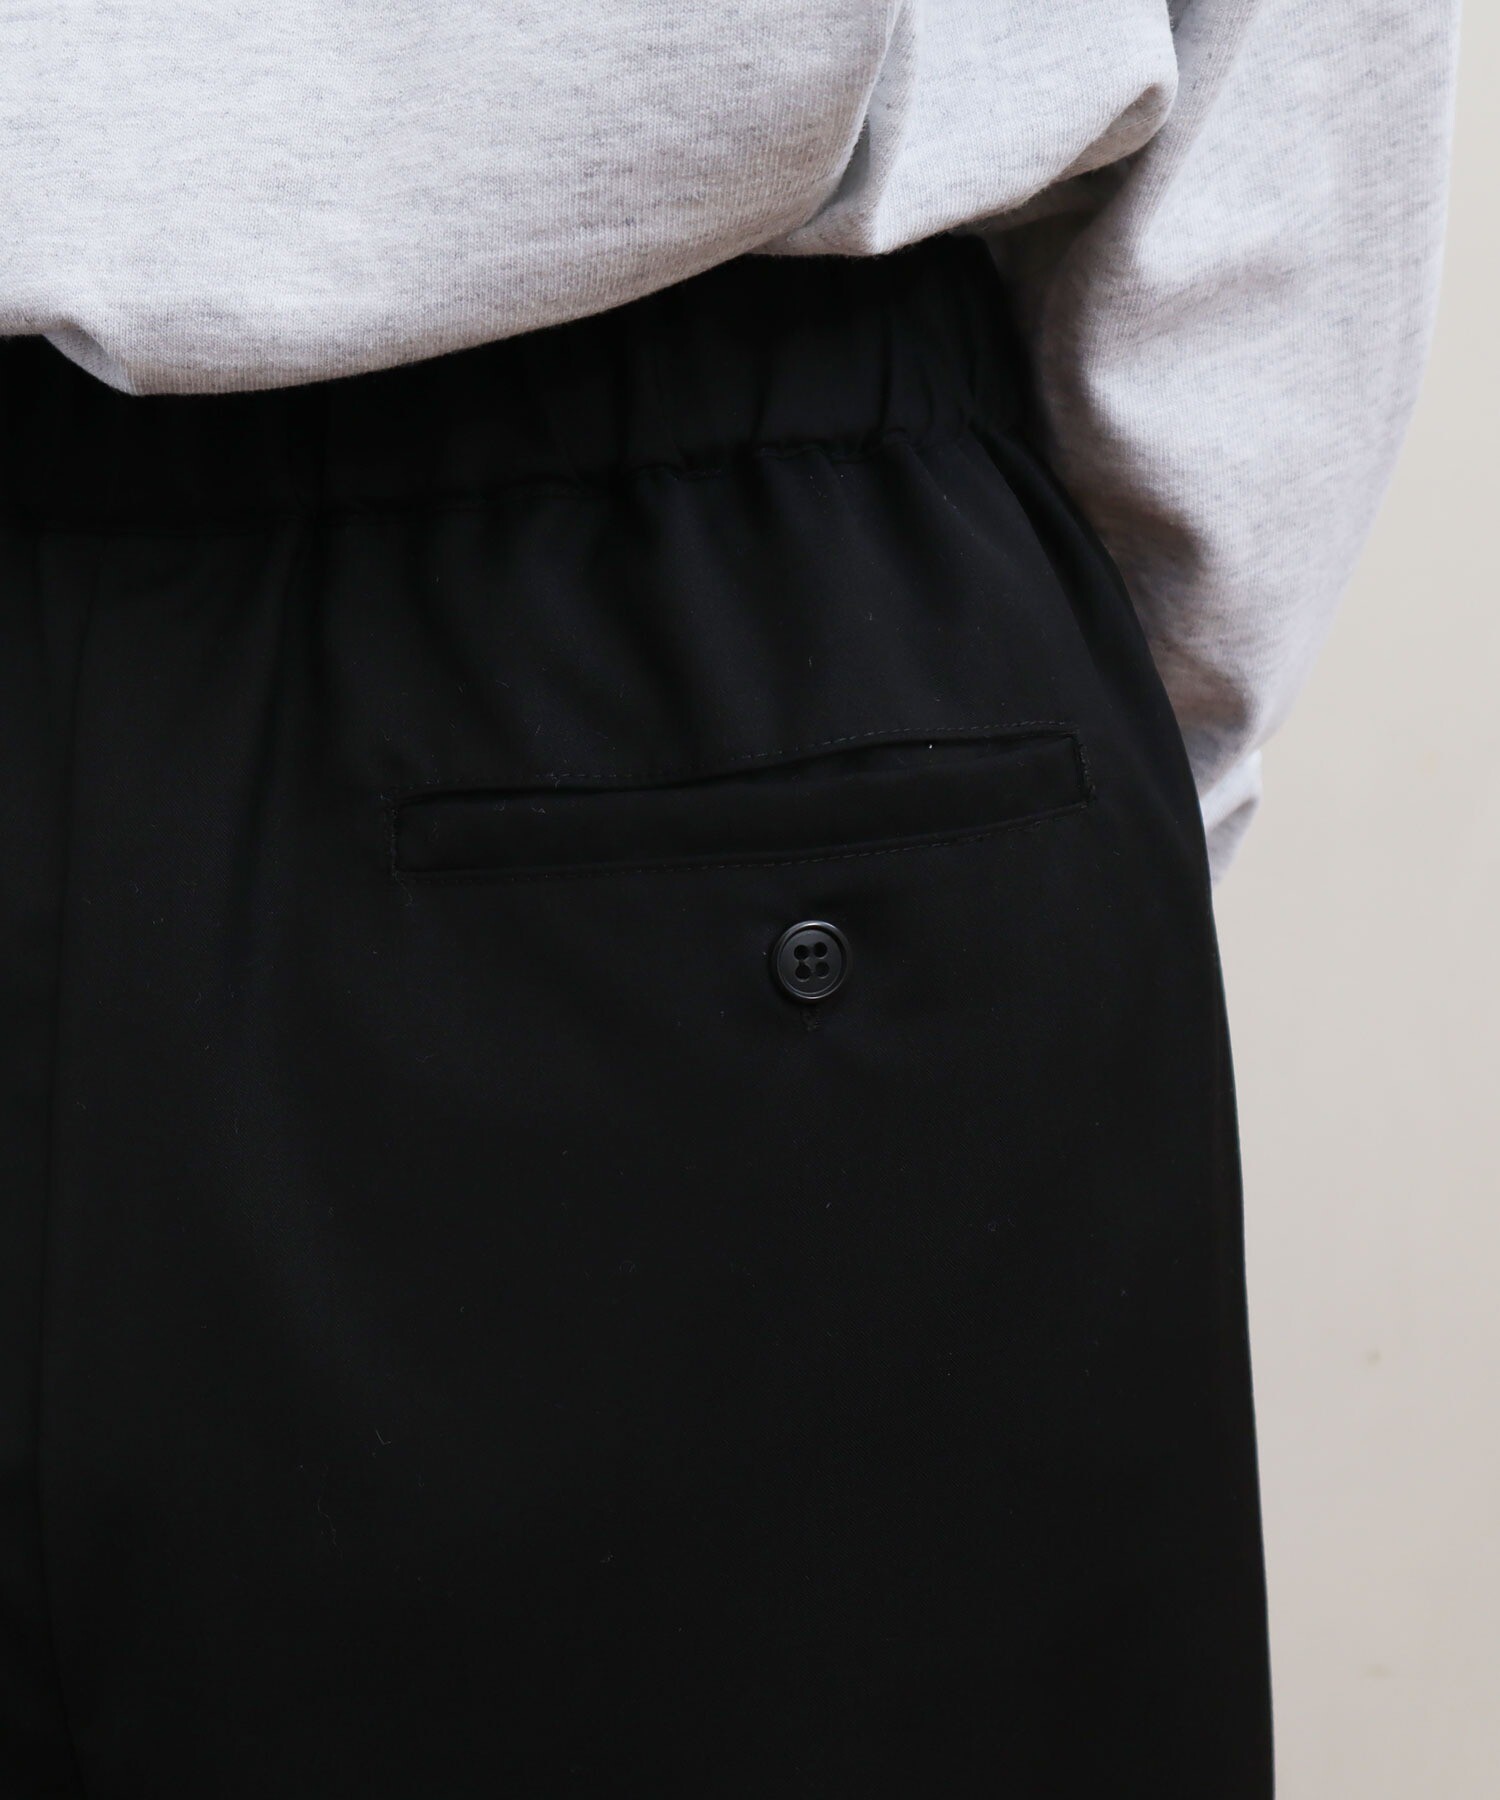 大好き pants(ブラック) DECO London 完売品:fig - その他 - app-zen.com